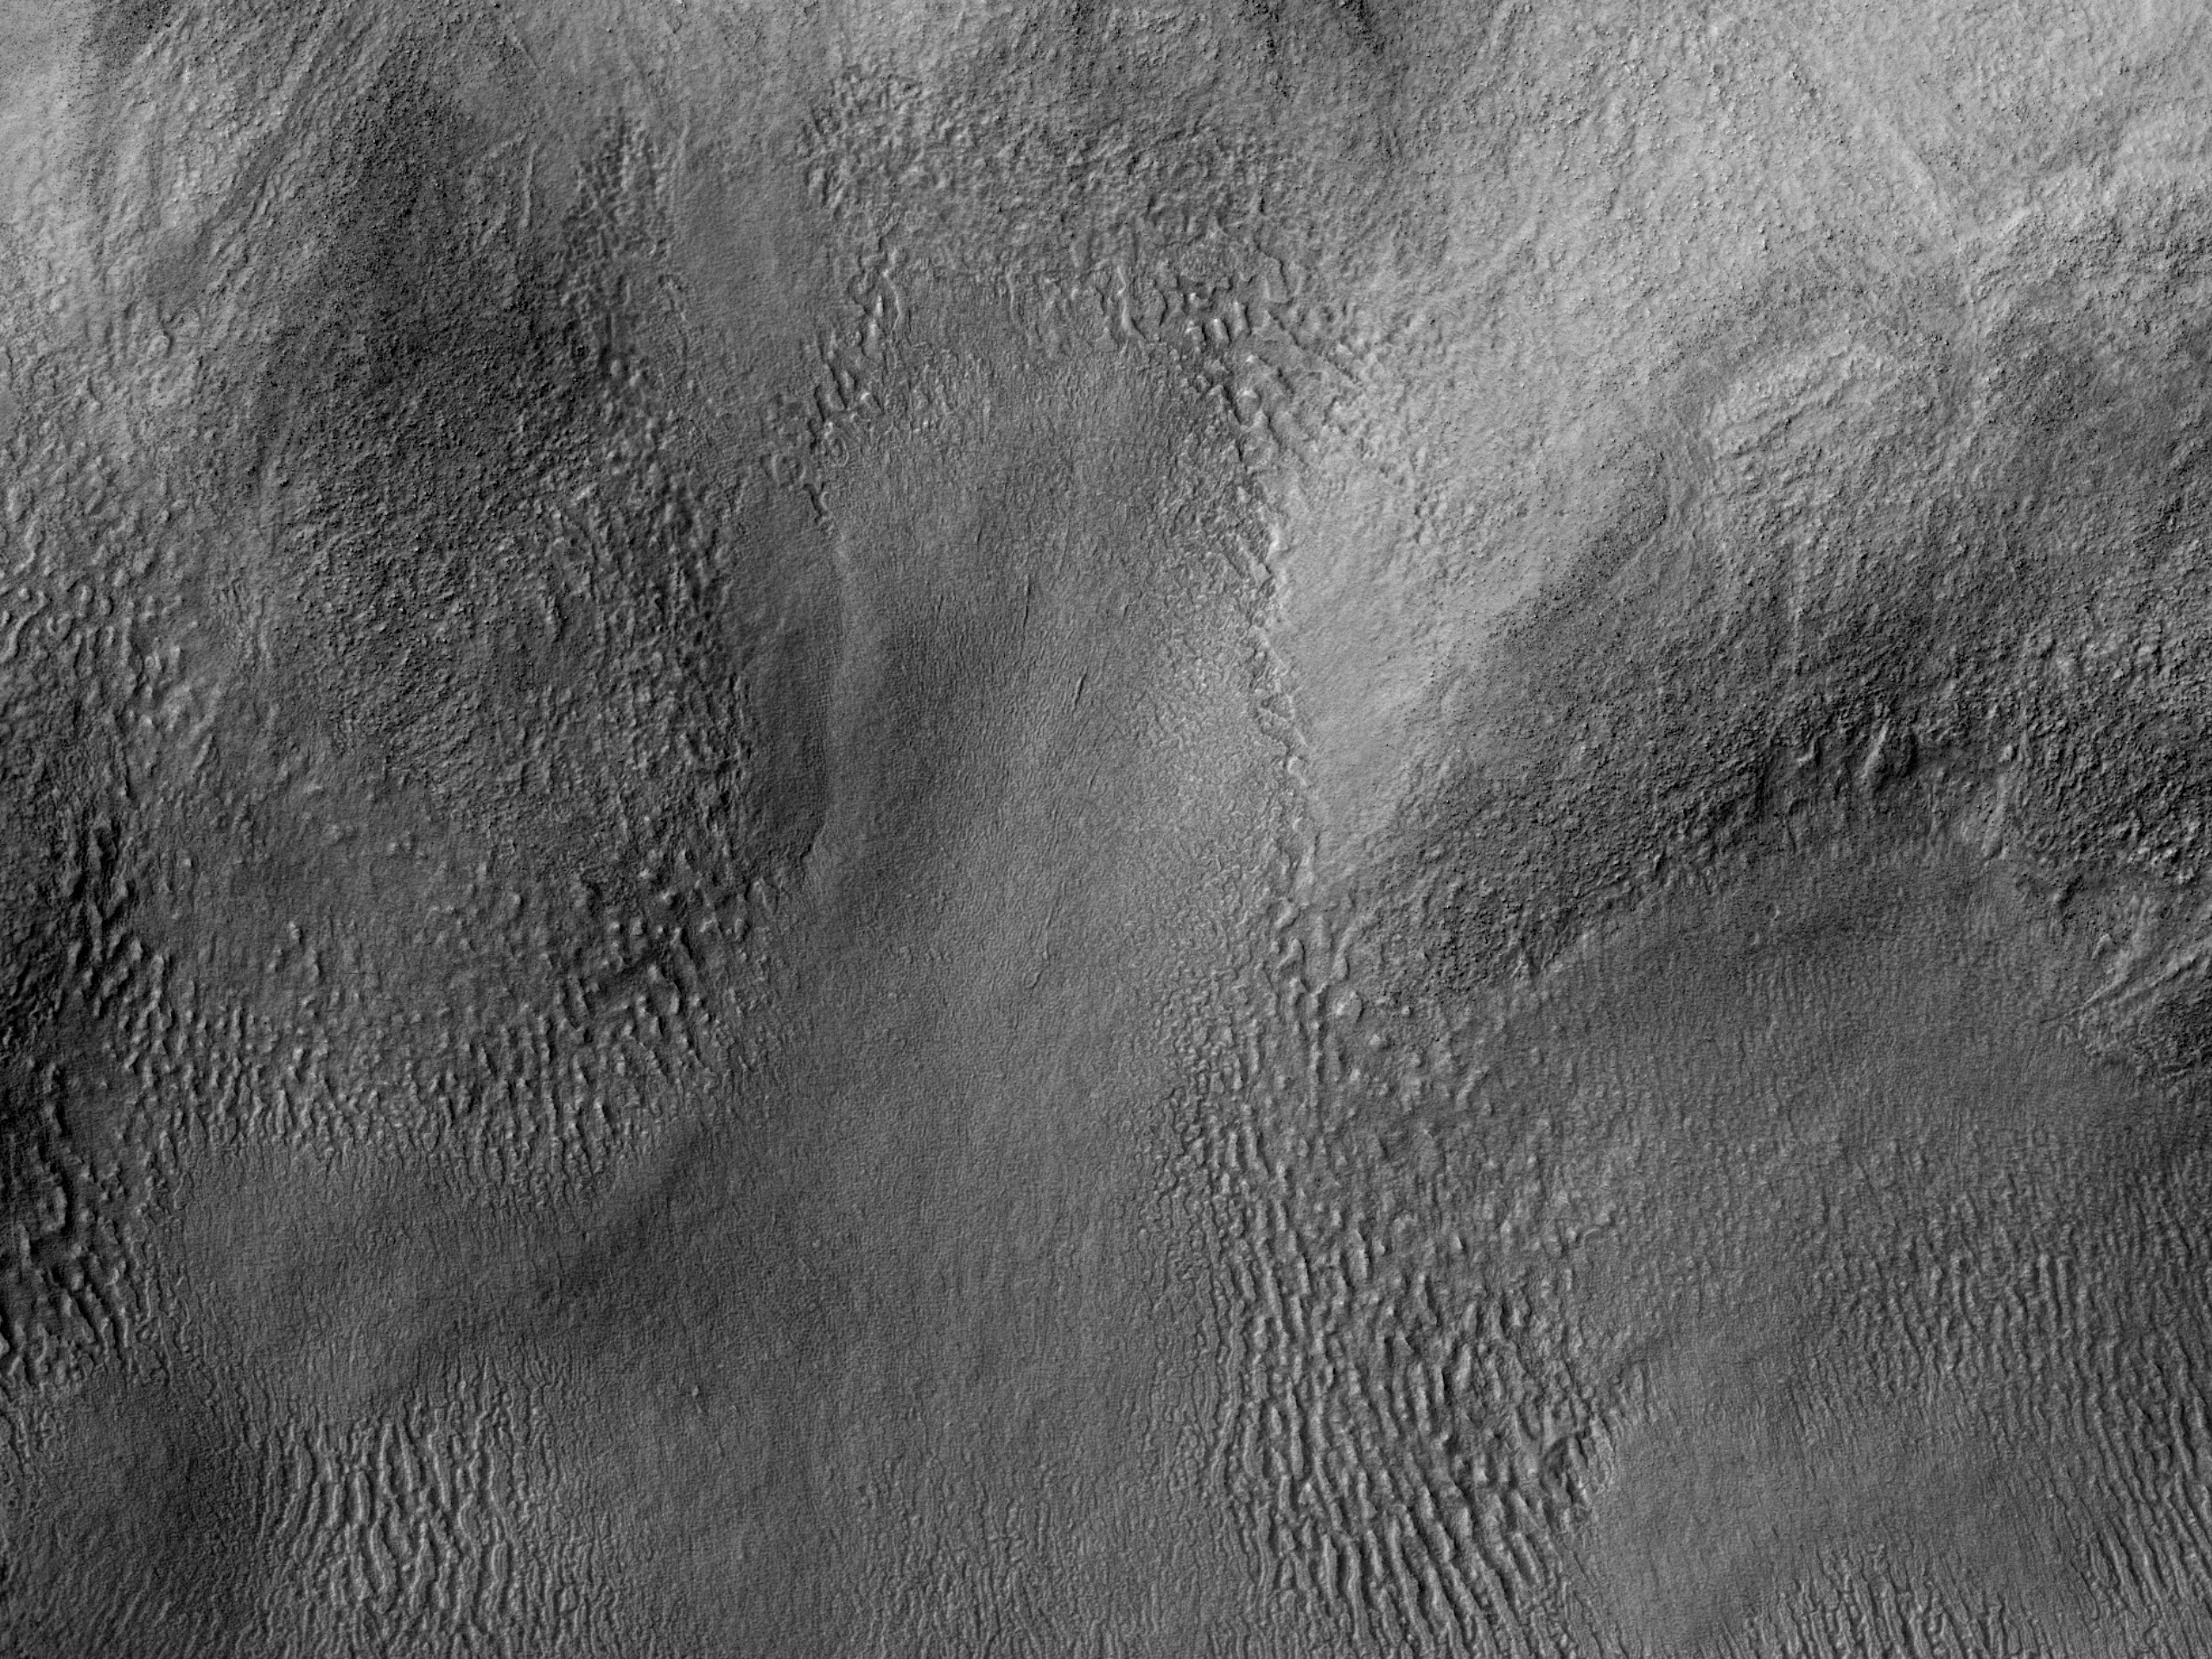 希拉斯平原的复杂地形 (Hellas Planitia)